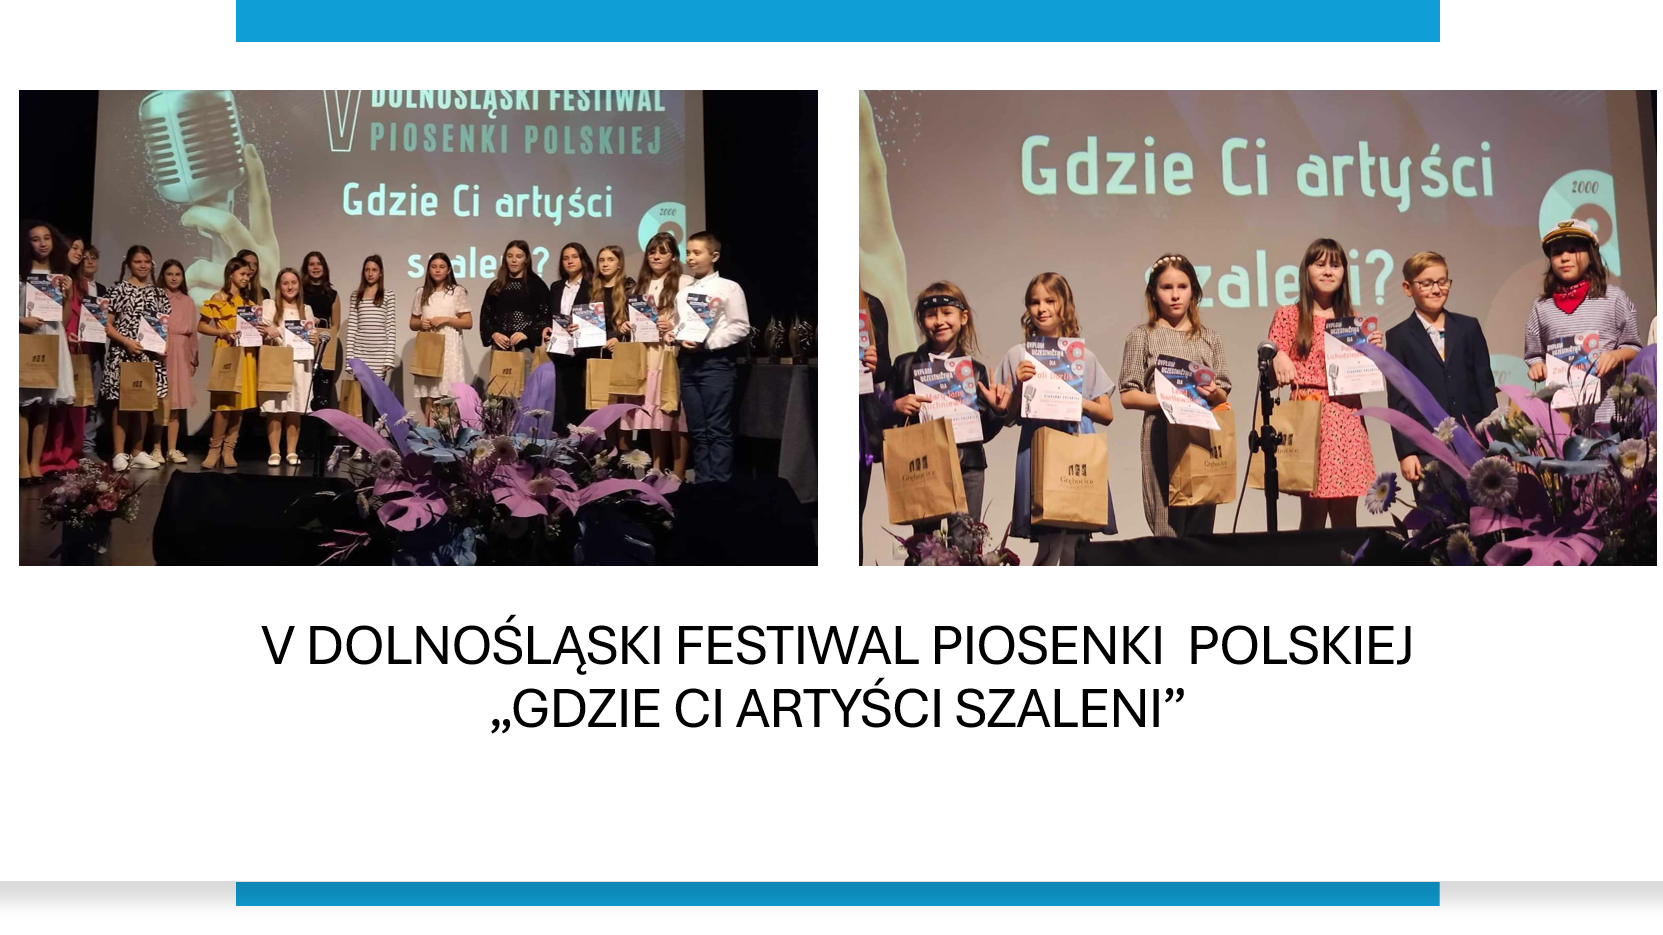 V Dolnośląski Festiwal Piosenki Polskiej "Gdzie Ci artyści szalenie?"